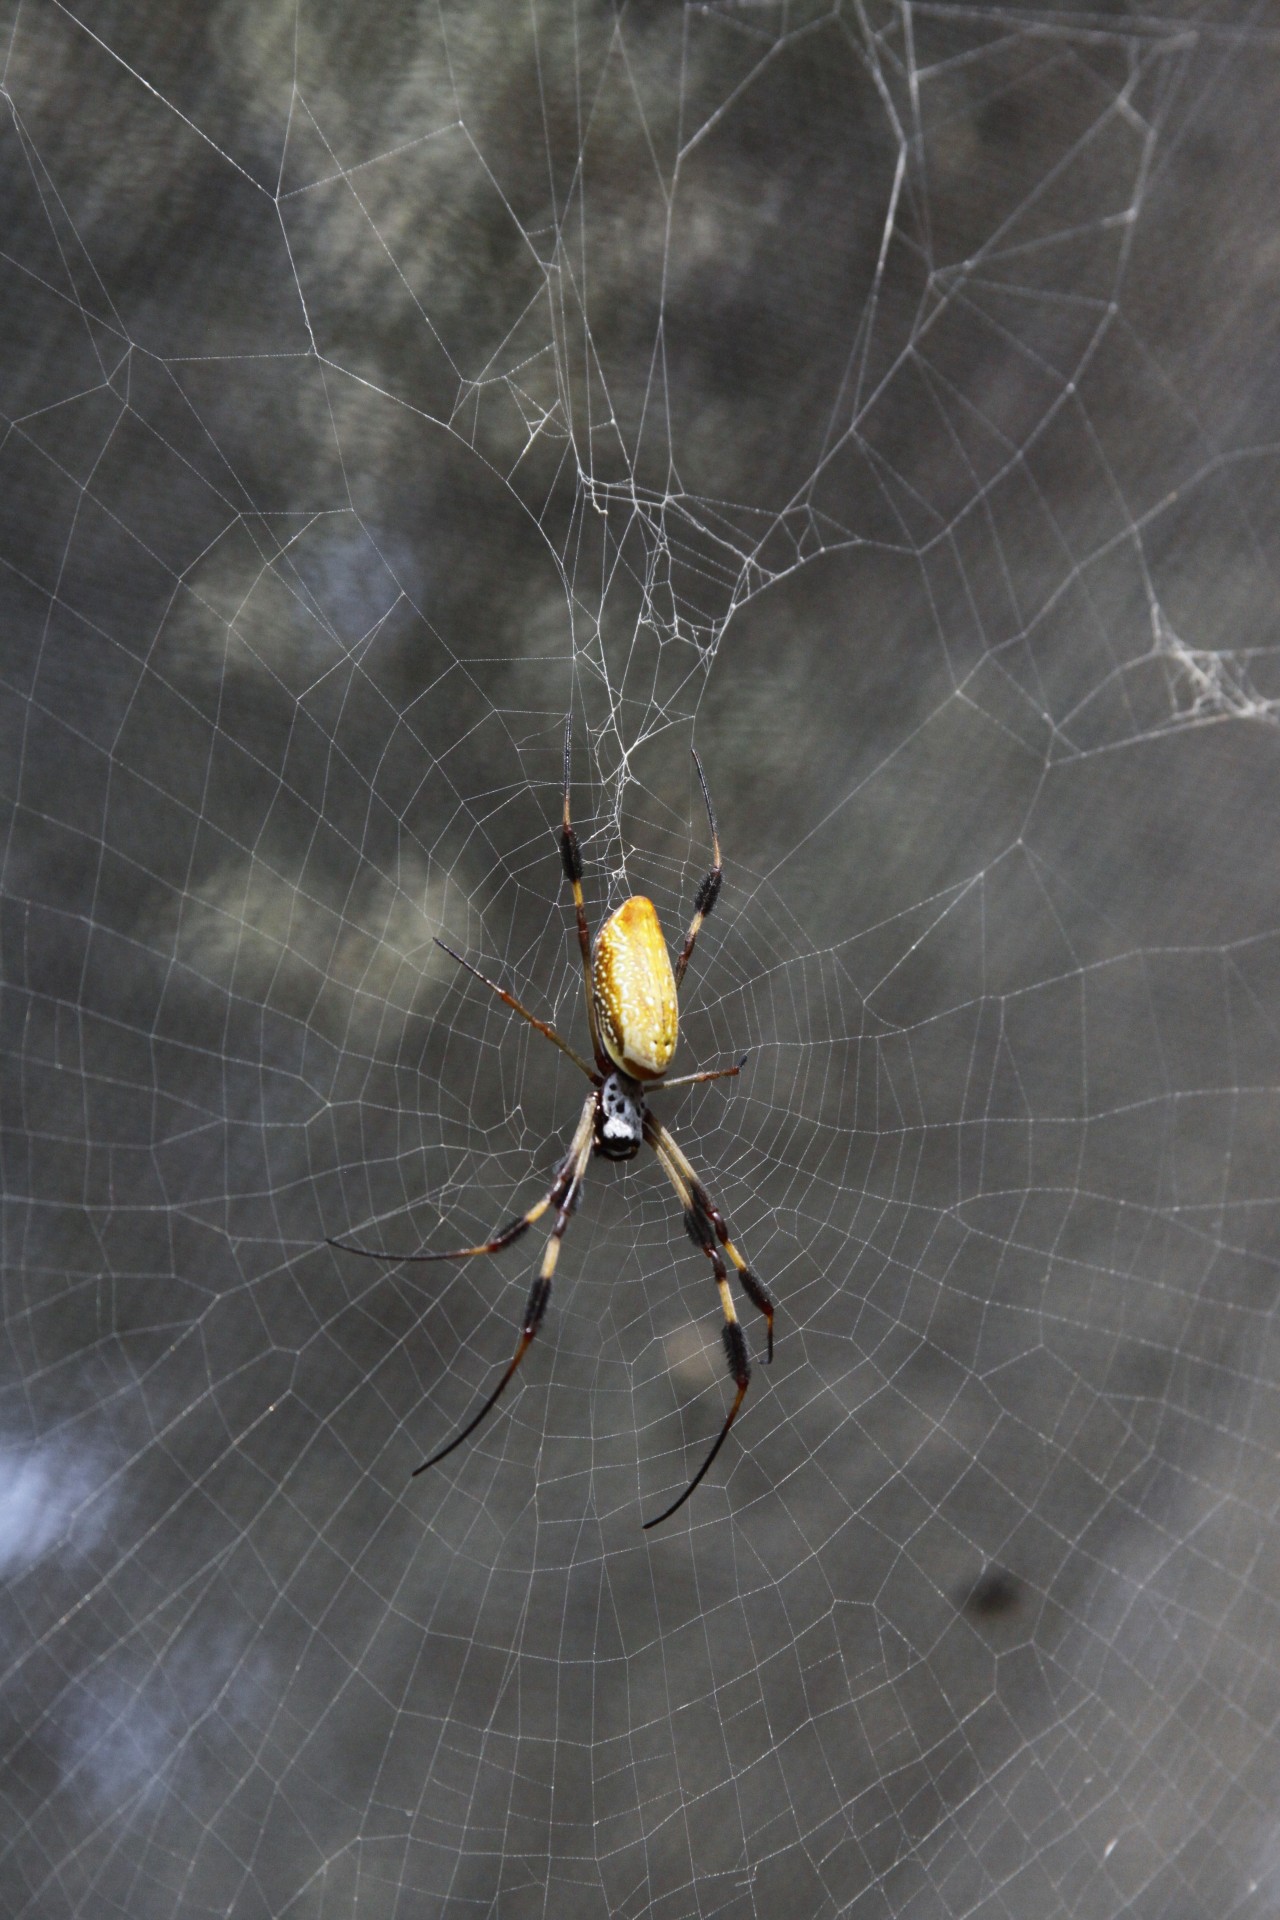 Yellow & schwarze Spinne auf einem W